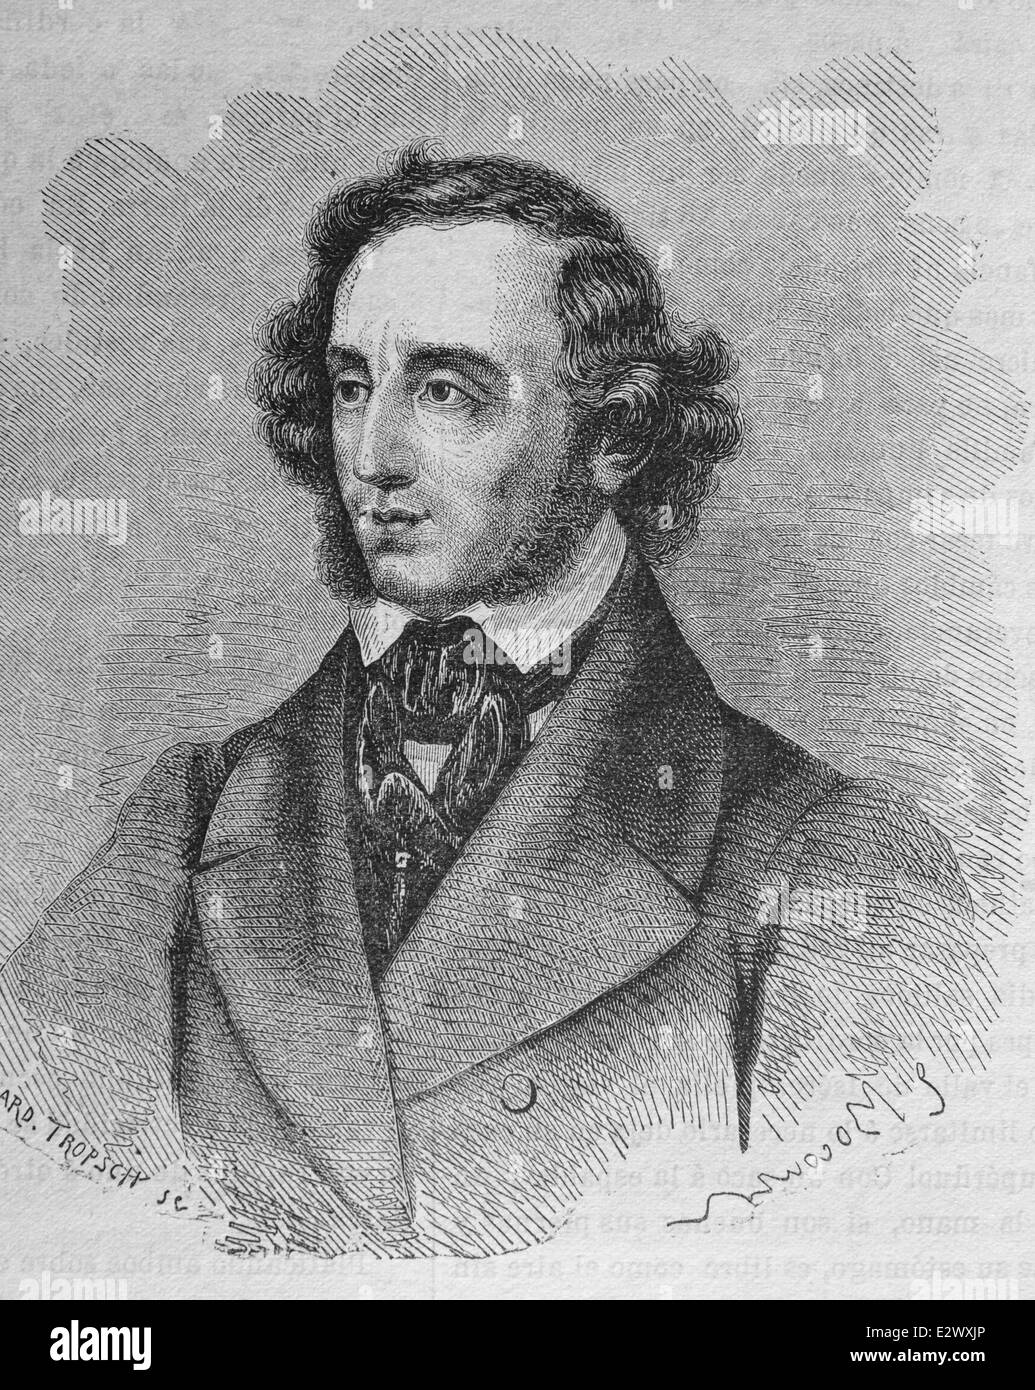 Felix Mendelssohn (1809-1847). Compositore tedesco, pianista, organista e conduttore. Periodo Romantico. Incisione. Foto Stock